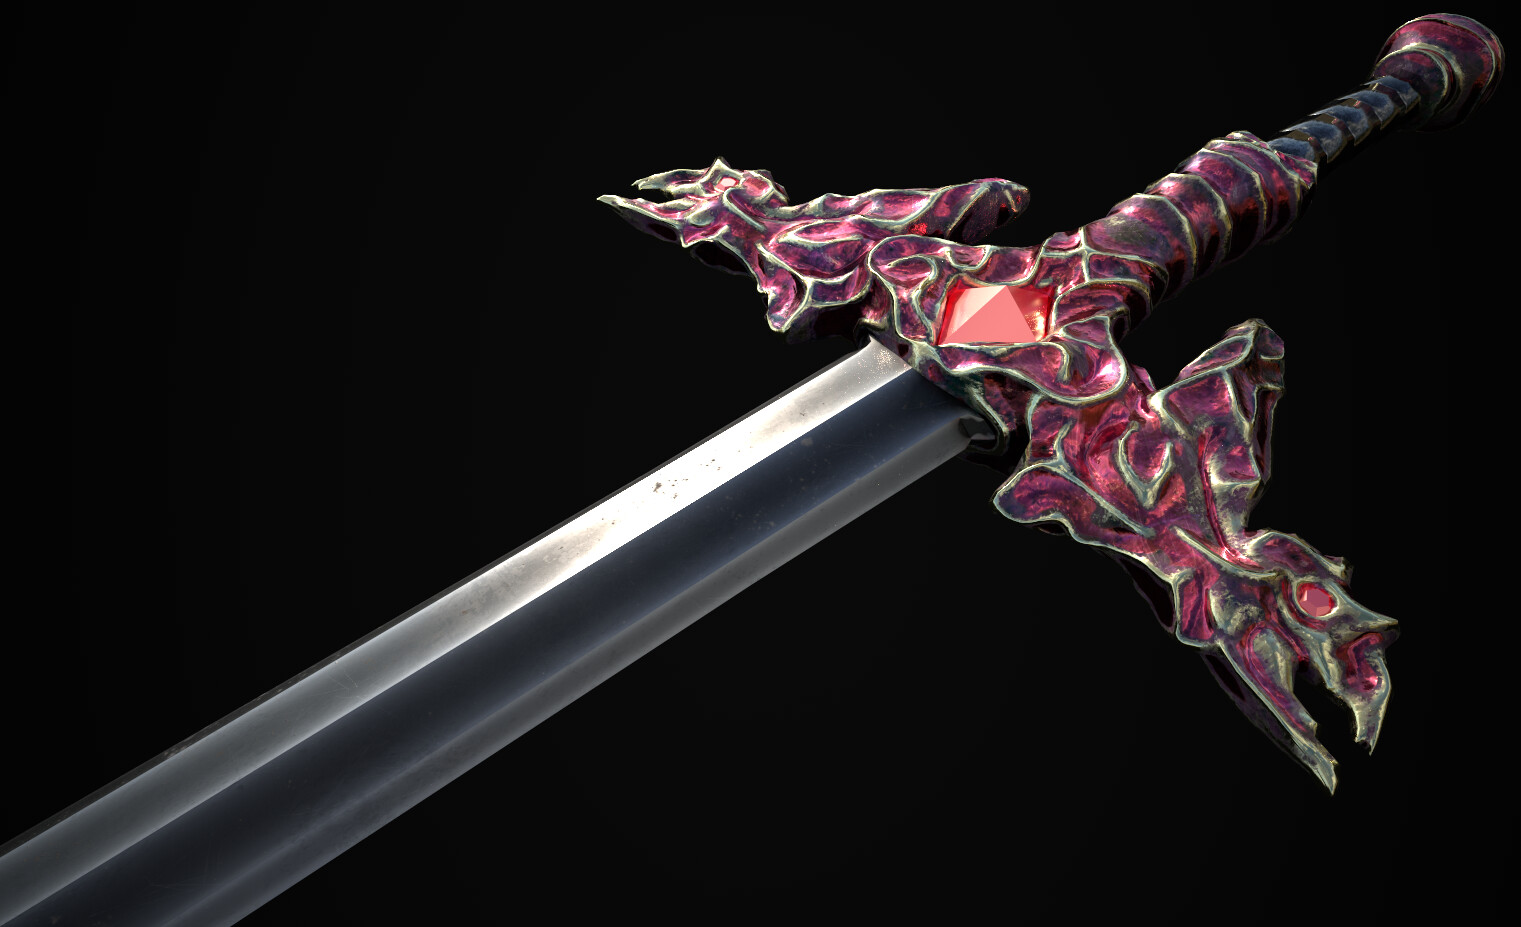 Black Dragon Sword - Omega Artworks